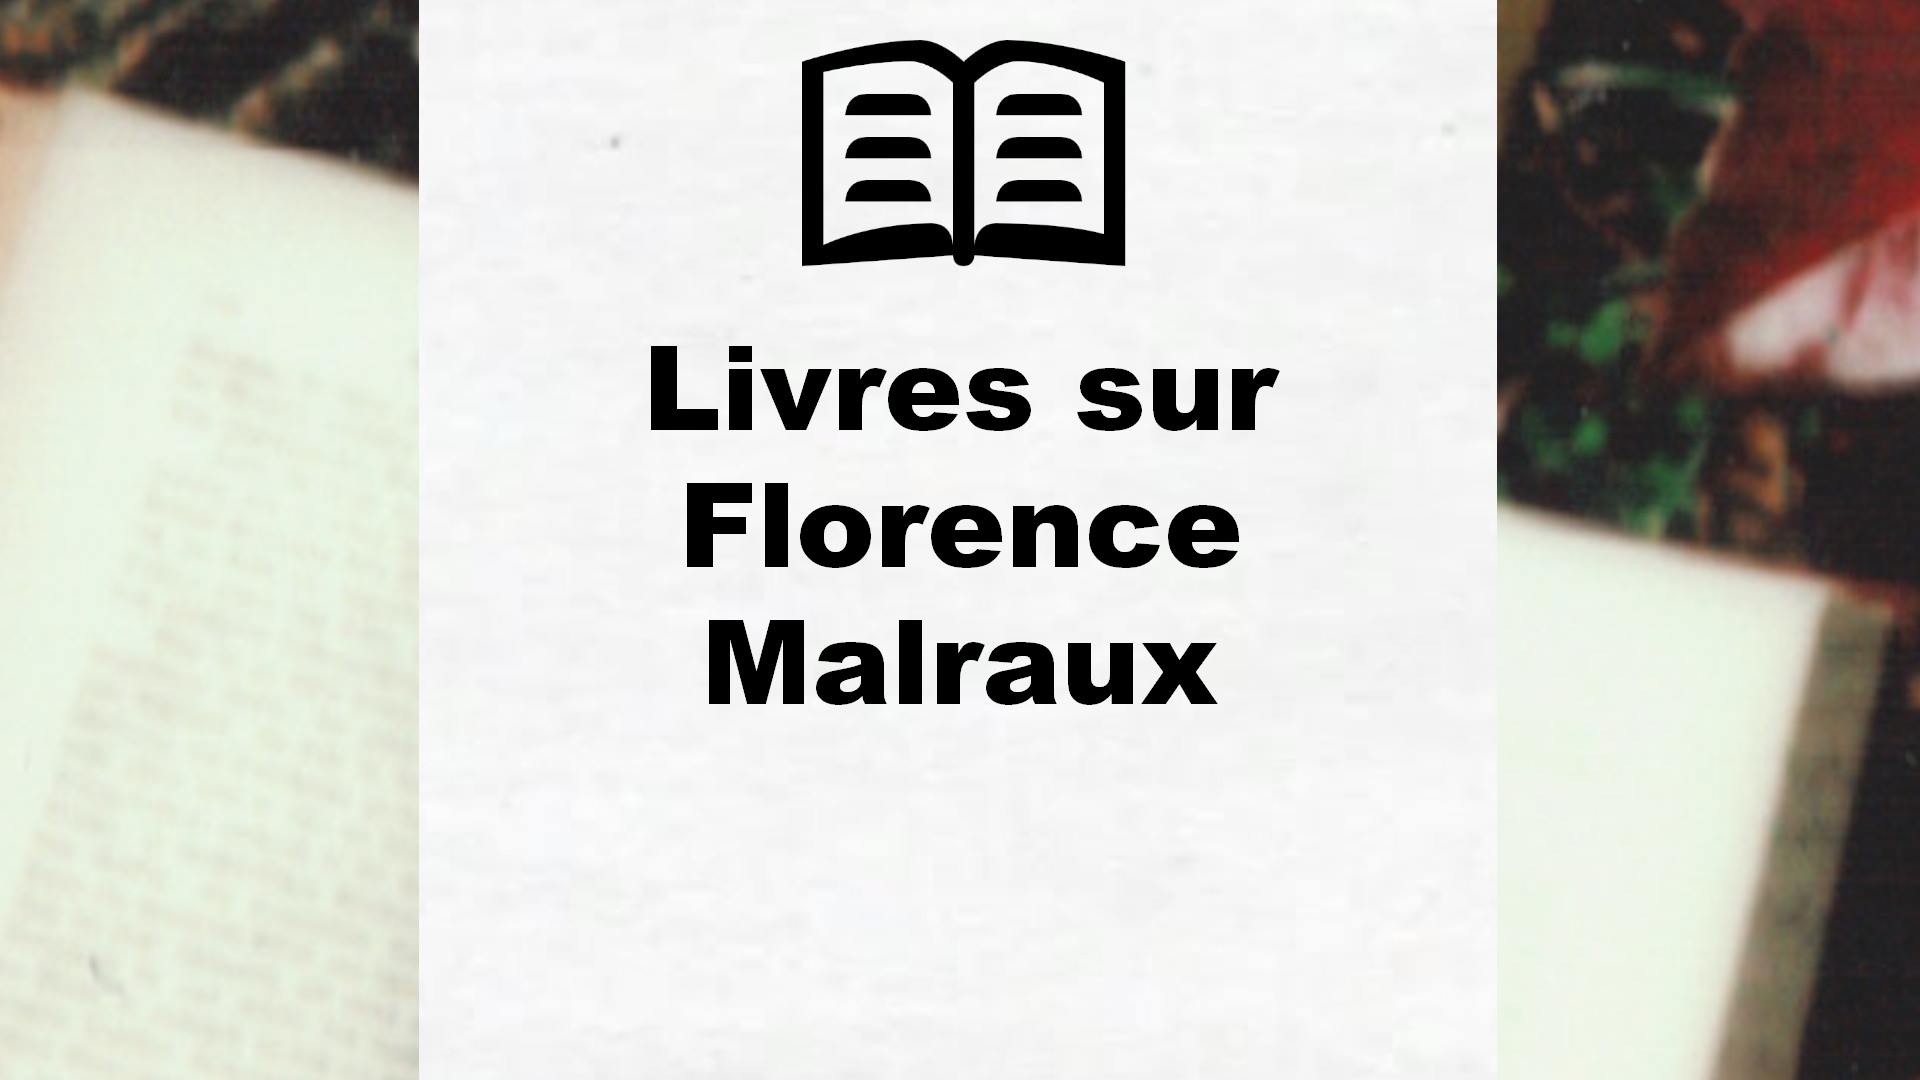 Livres sur Florence Malraux